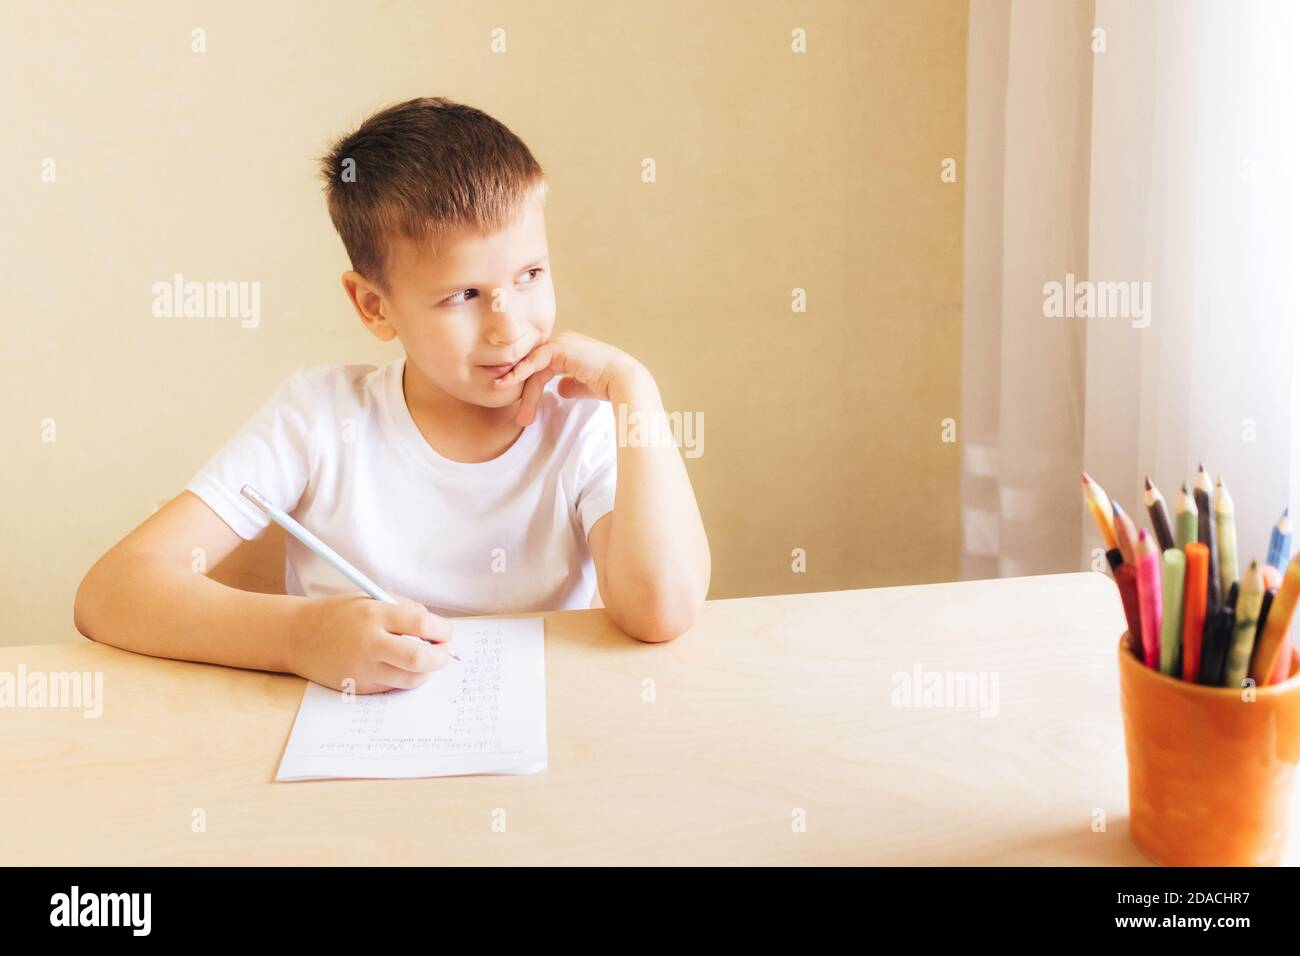 Nette kleine Schüler zu Hause lernen. 7 Jahre alter Junge macht Unterricht am Schreibtisch in seinem Zimmer. Stockfoto